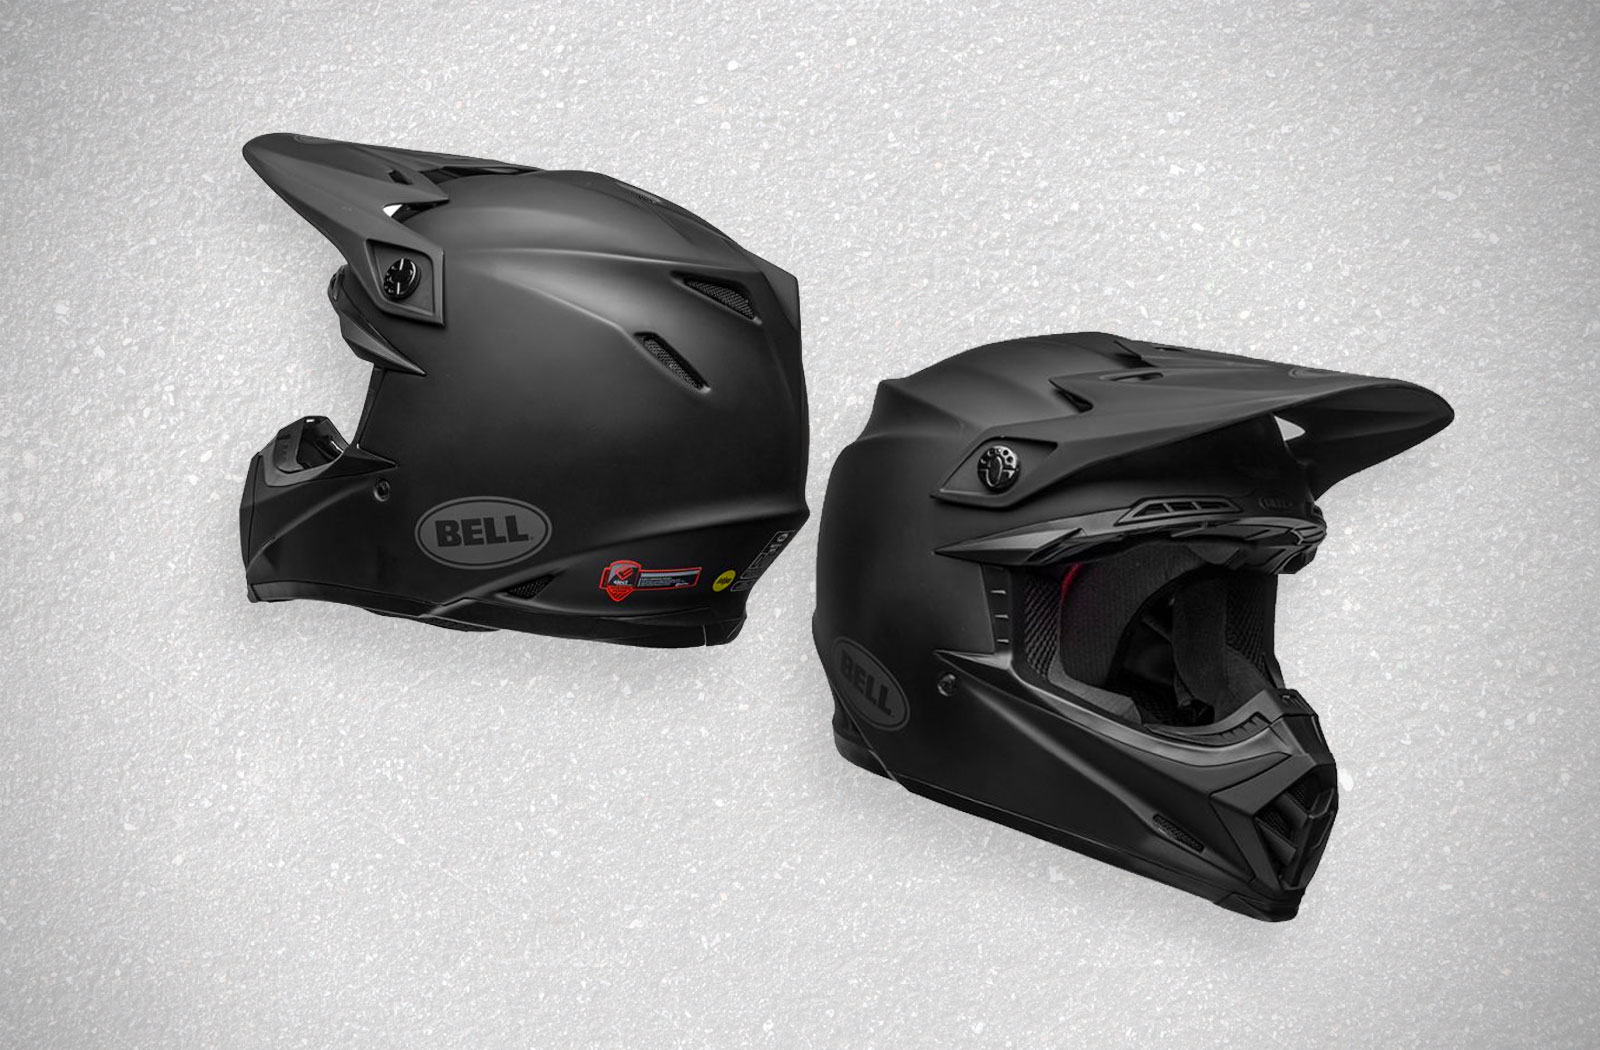 Bell Moto 9 helmet